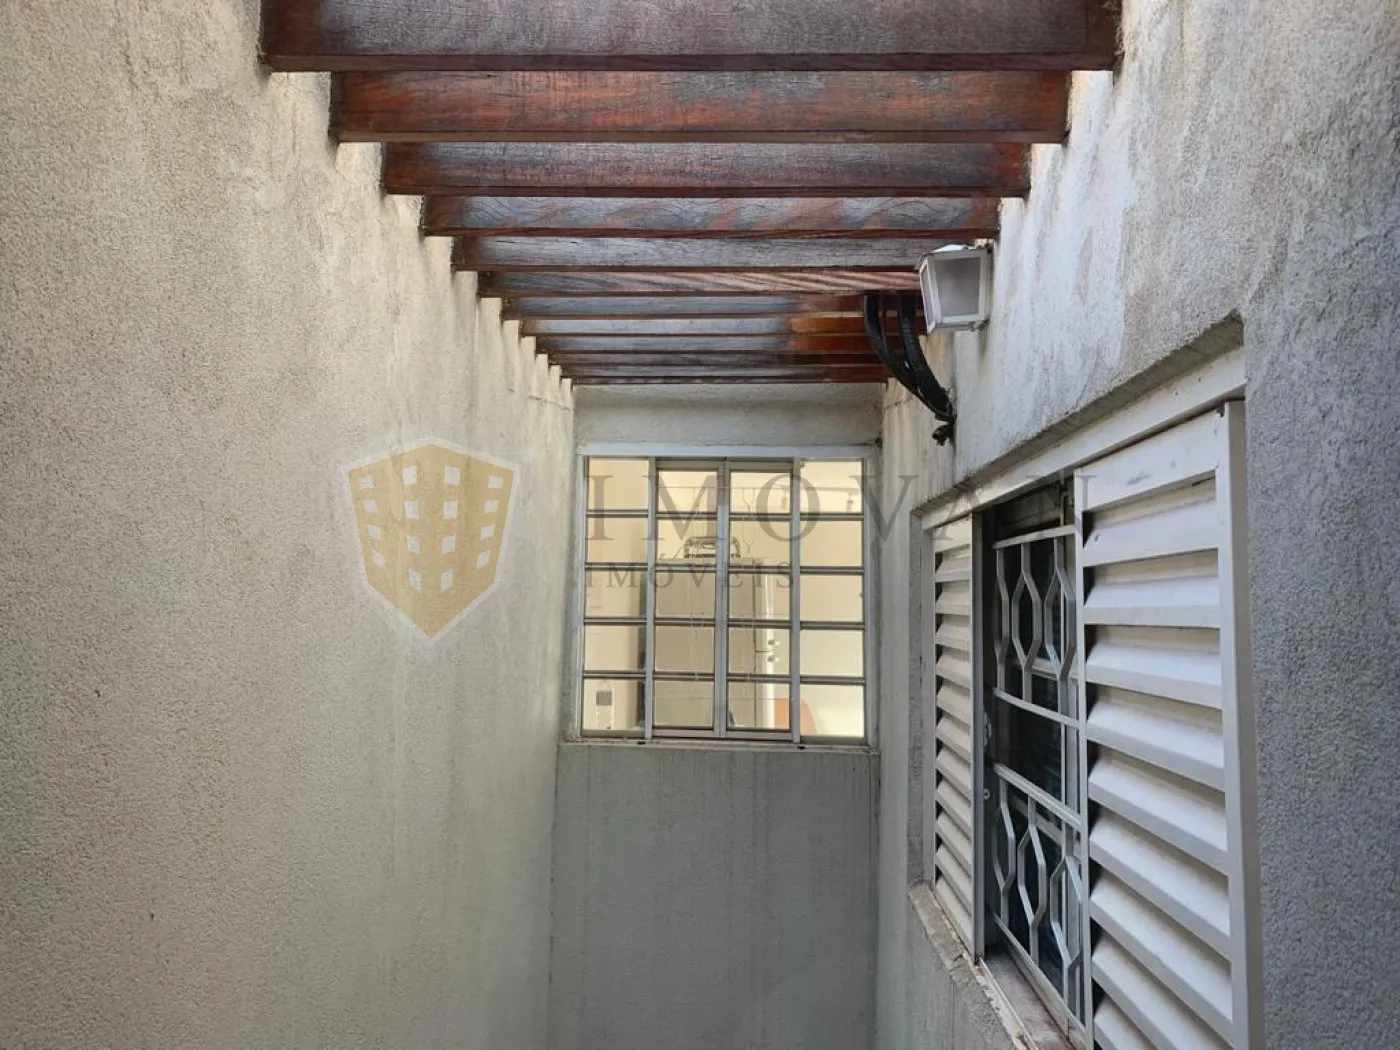 Comprar Casa / Padrão em Ribeirão Preto R$ 480.000,00 - Foto 22